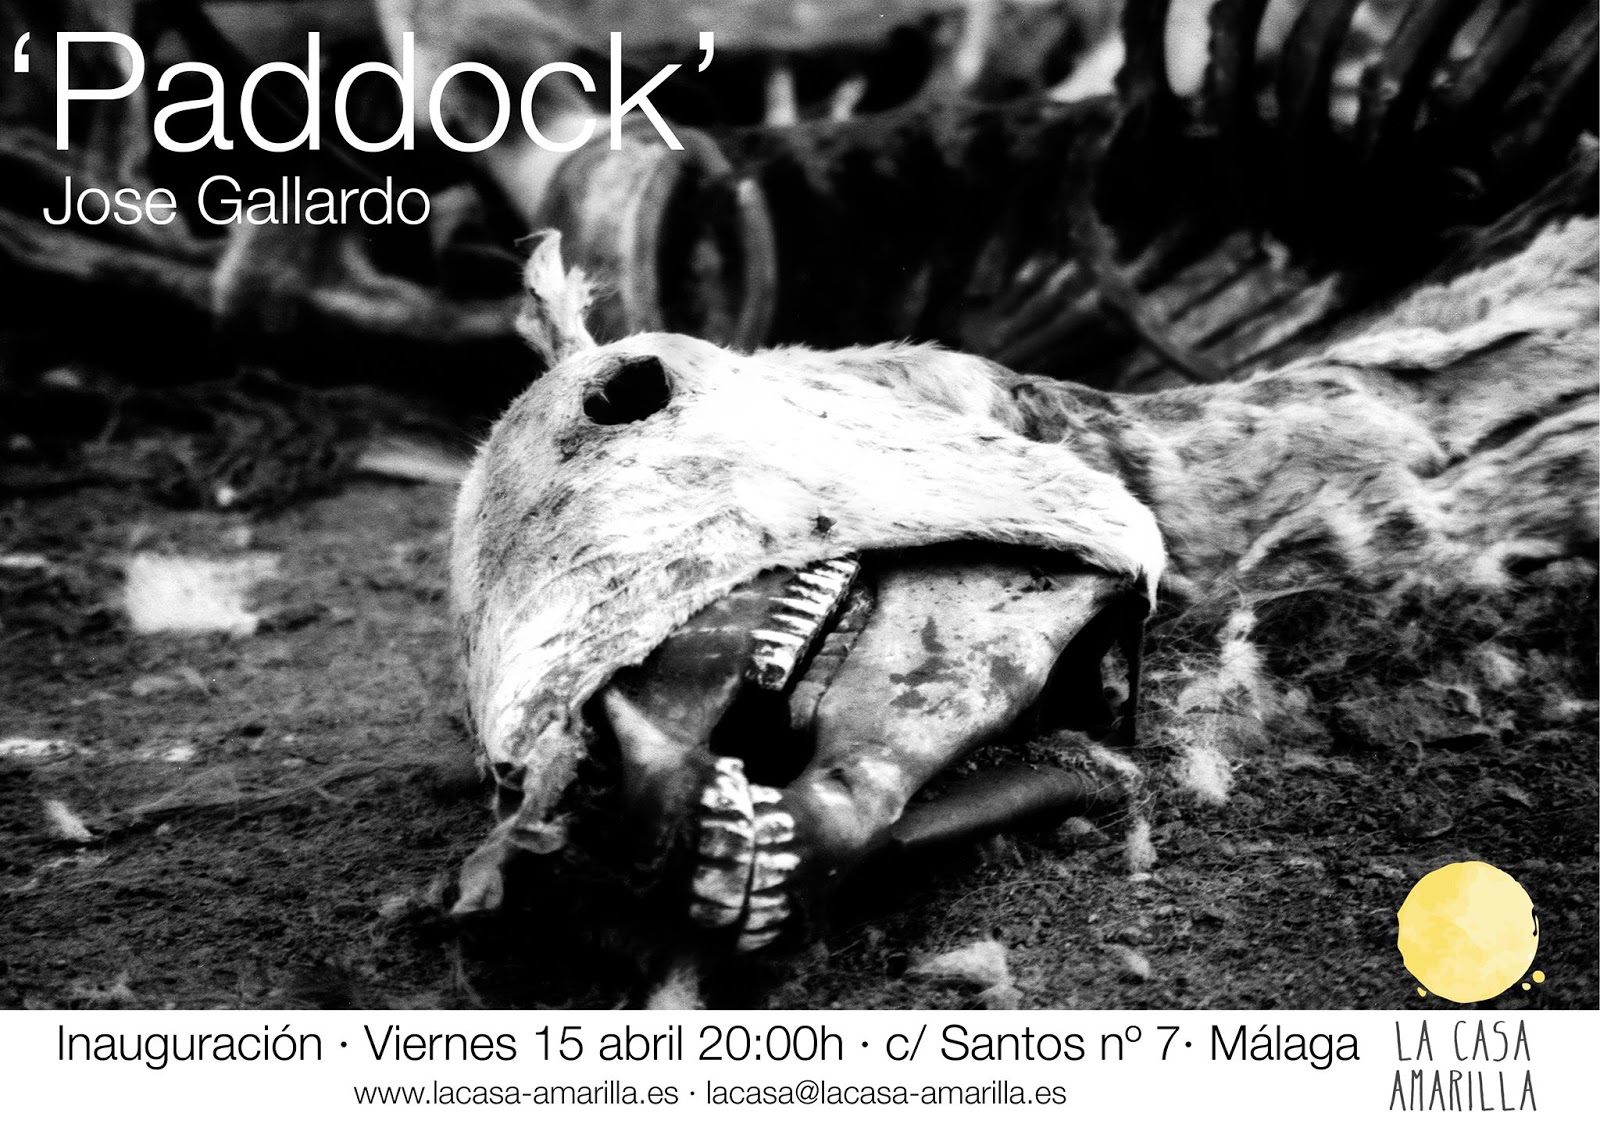 Paddock - José Gallardo